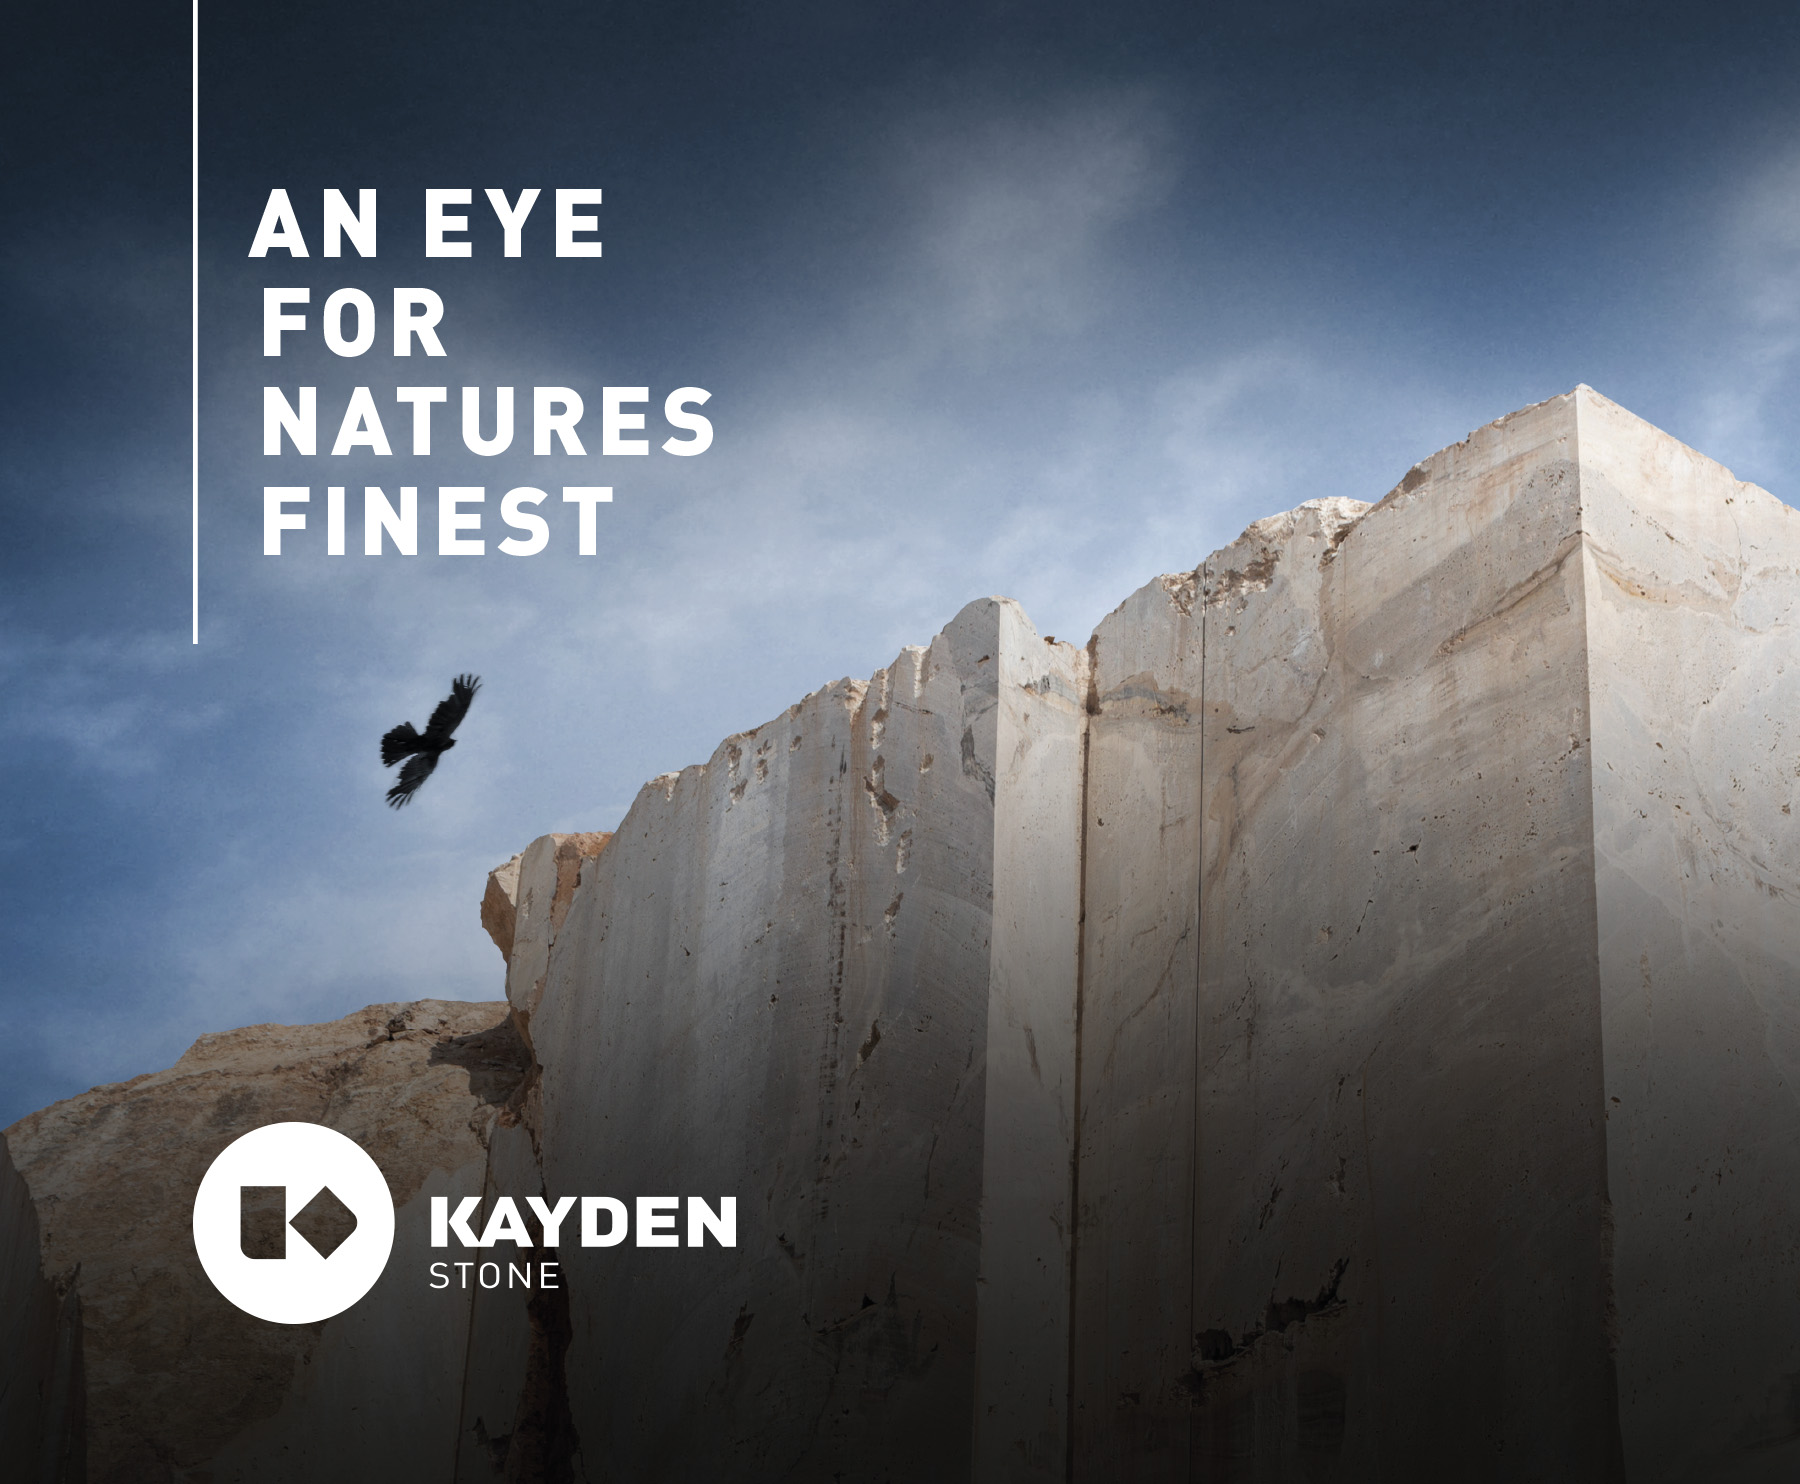 Kayden Stone